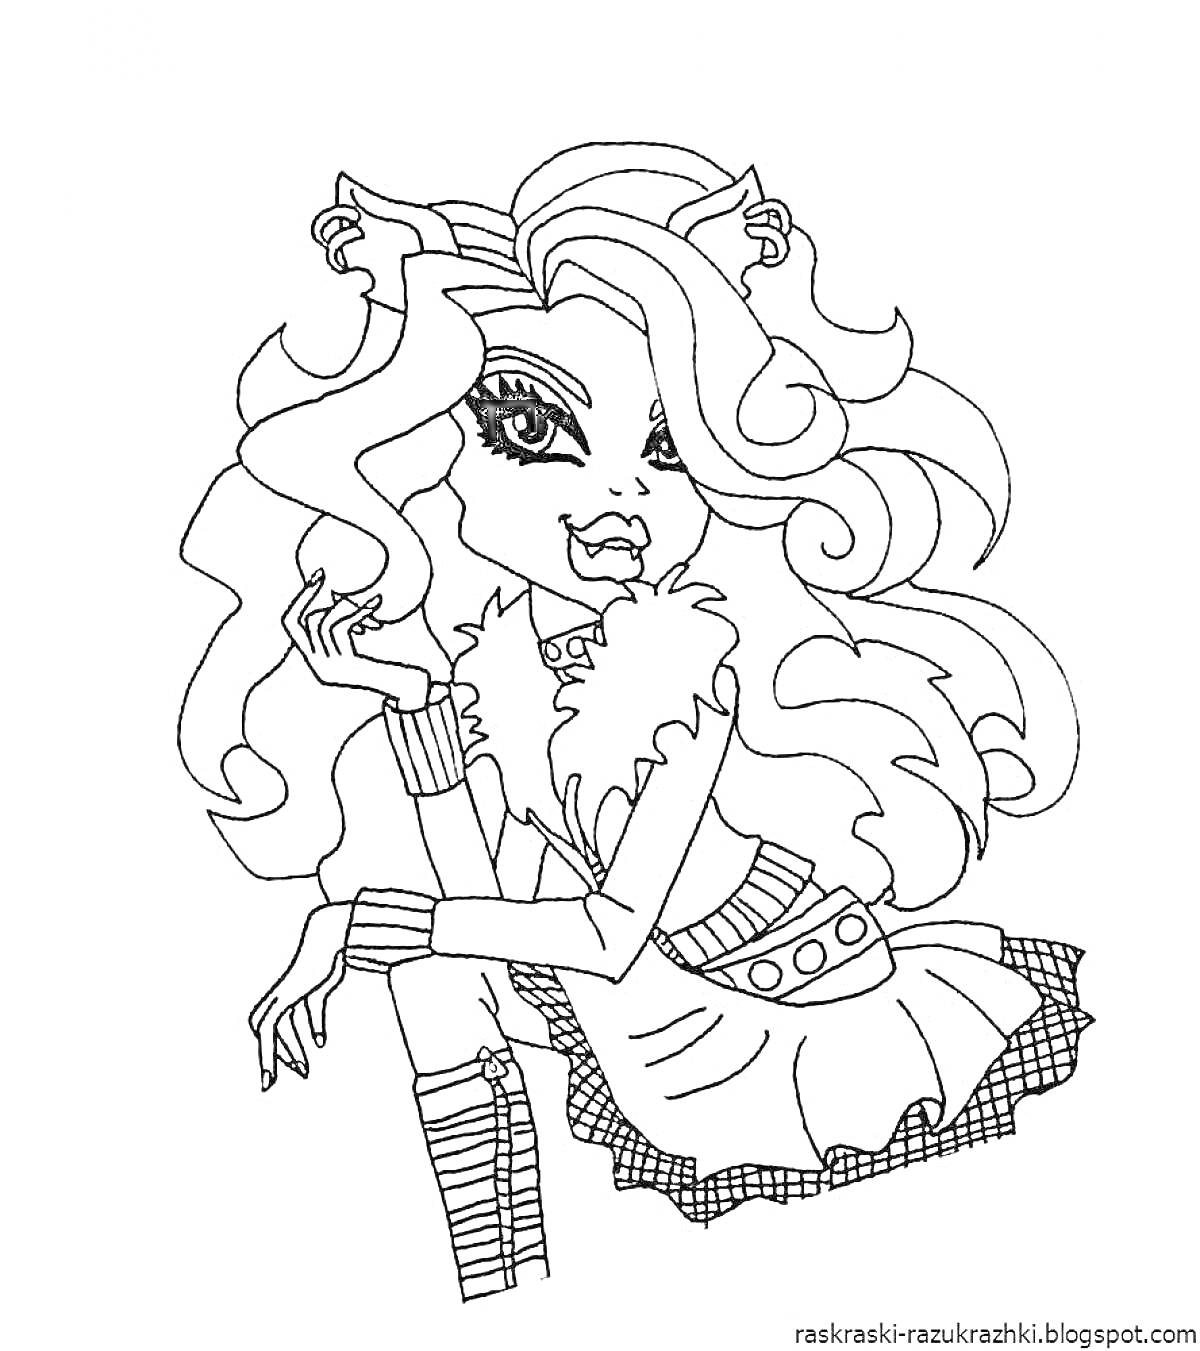 Раскраска Девушка-монстр с длинными волнистыми волосами, ушками на голове, в меховой жилетке, топе без рукавов, поясом с круглыми пряжками и юбкой с узором в клетку